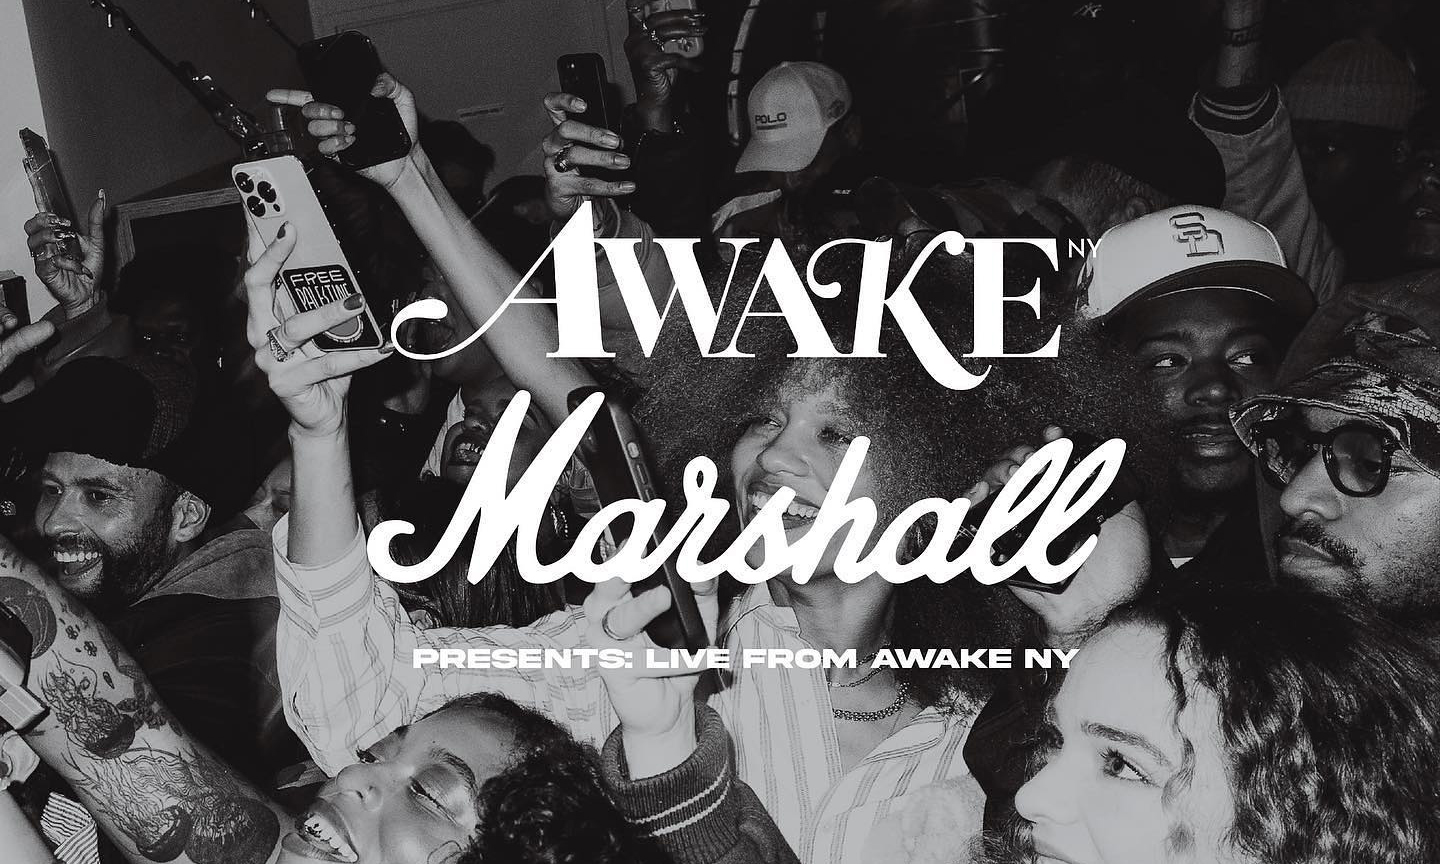 Awake NY x Marshall 发布合作活动「Live from Awake NY」